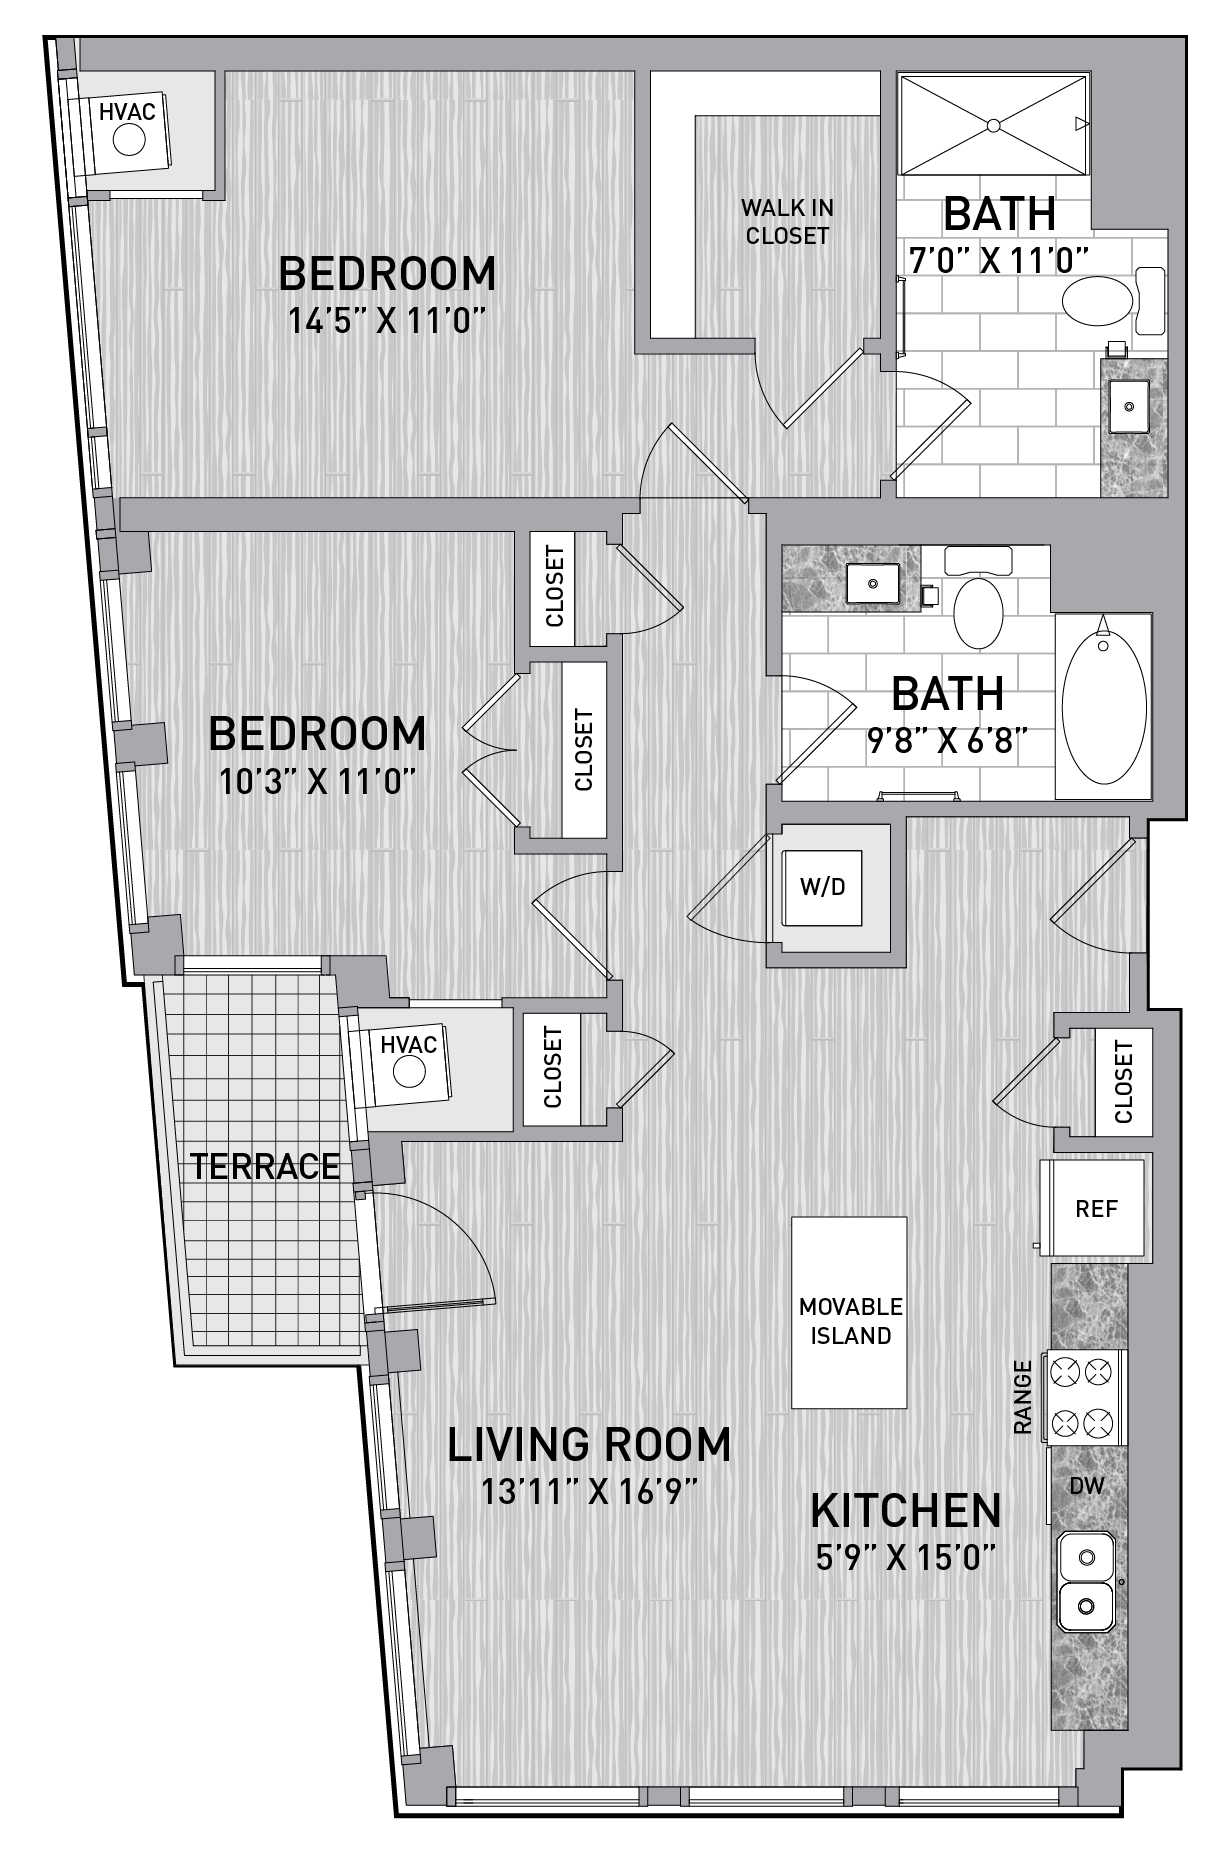 floorplan image of unit id 0320